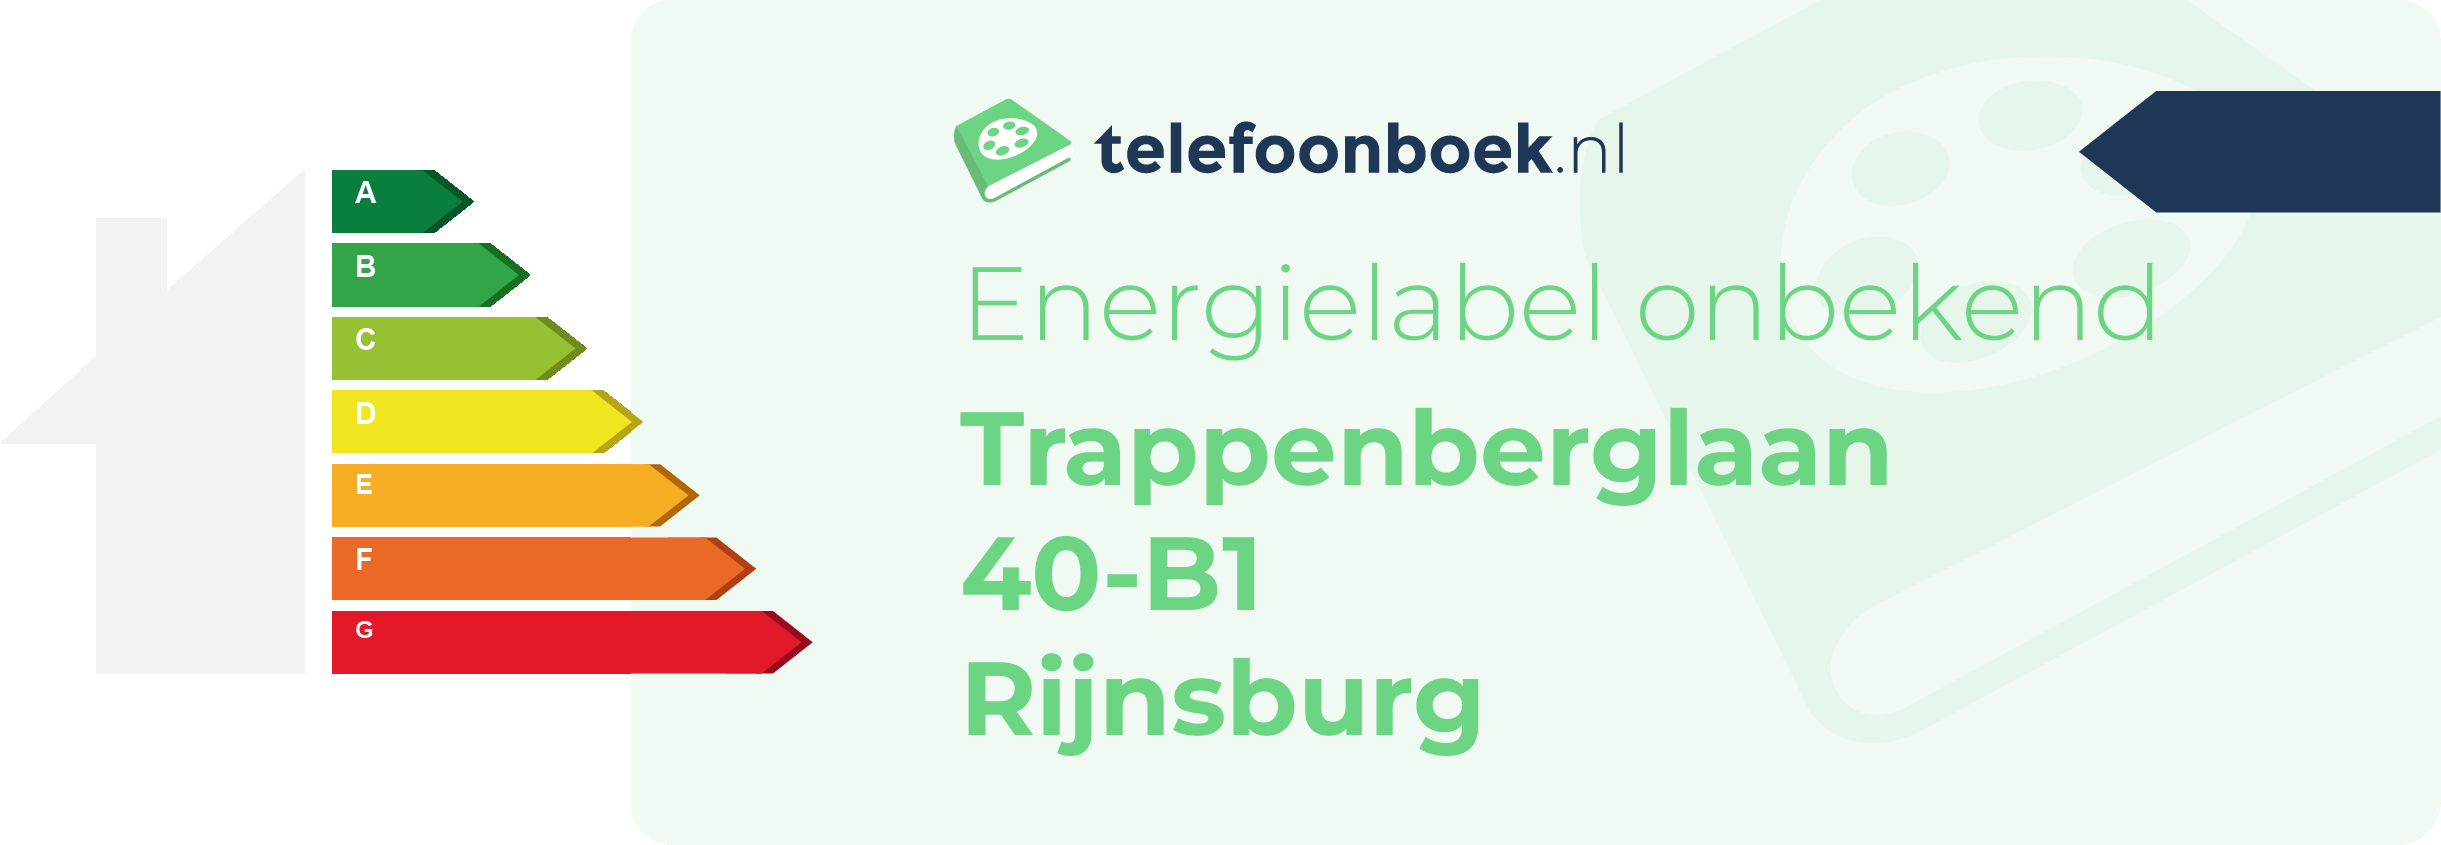 Energielabel Trappenberglaan 40-B1 Rijnsburg